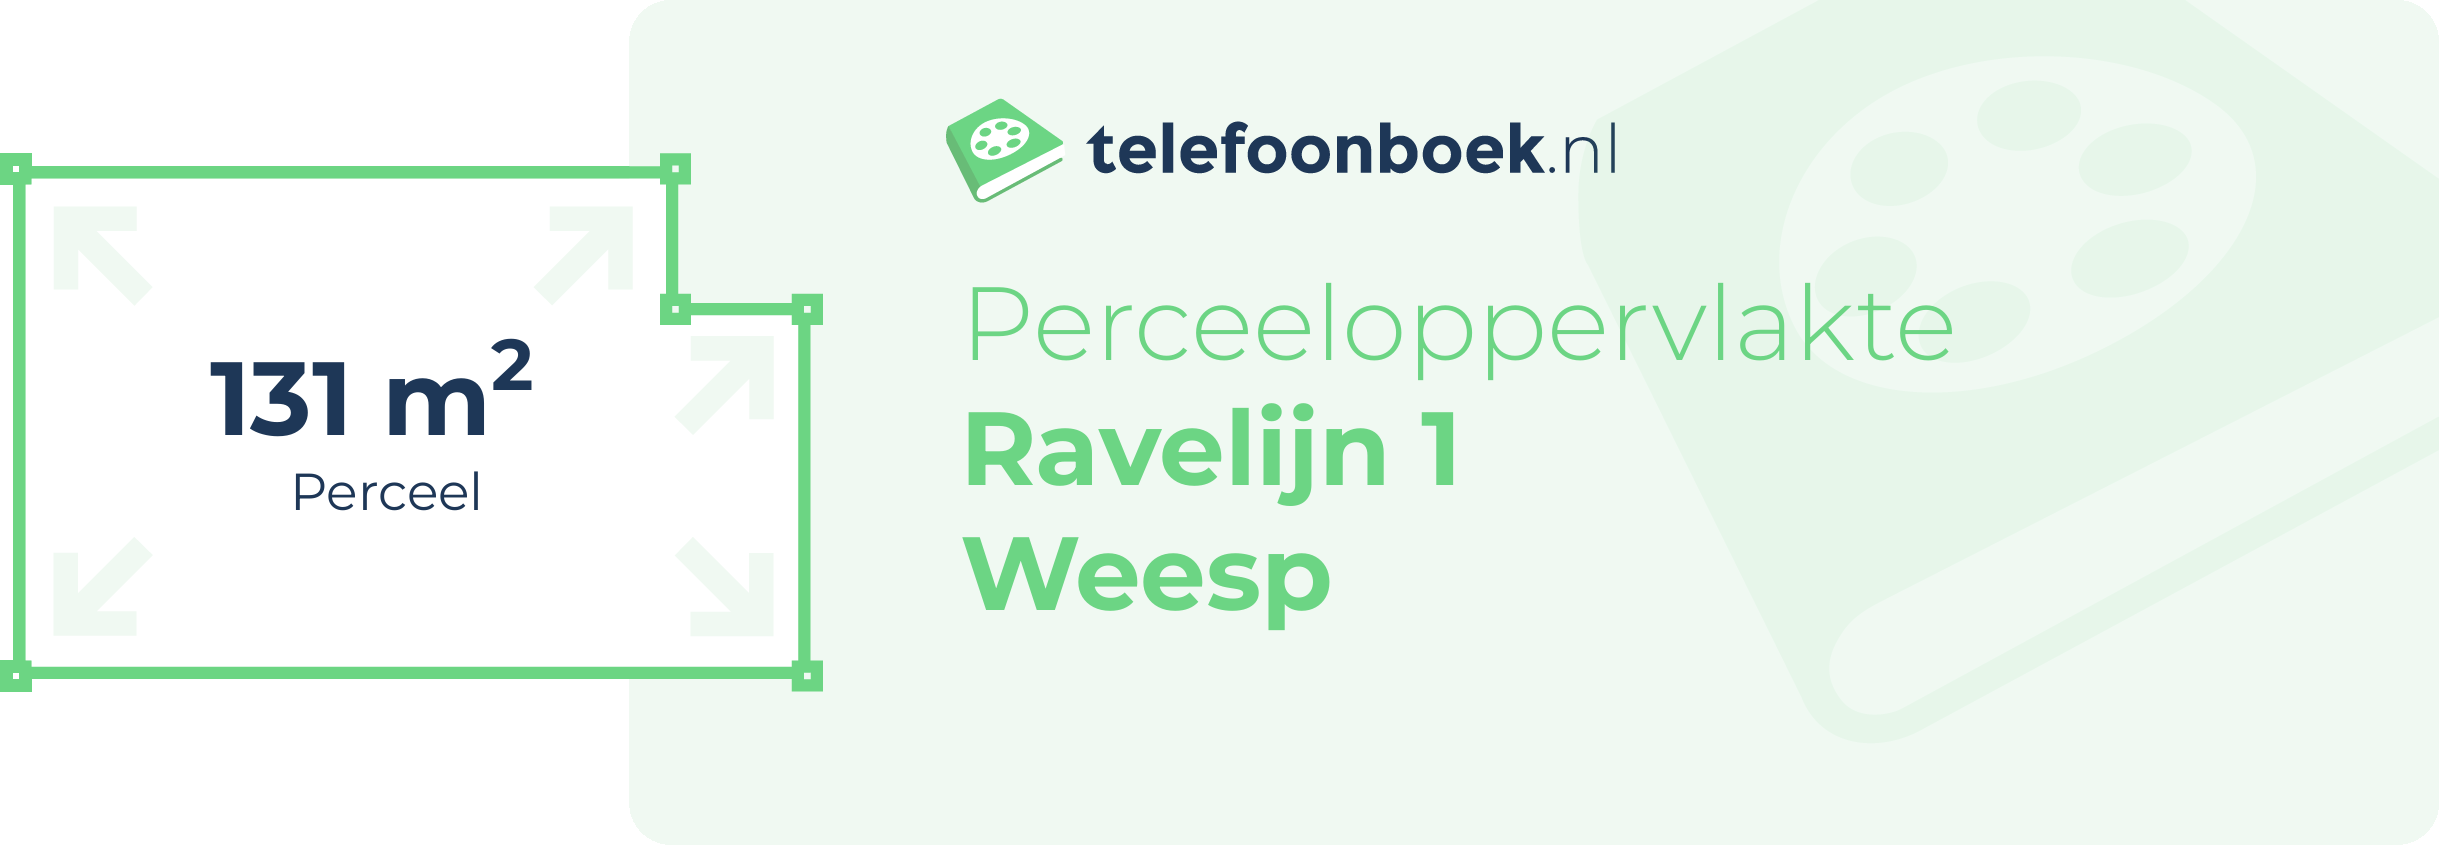 Perceeloppervlakte Ravelijn 1 Weesp